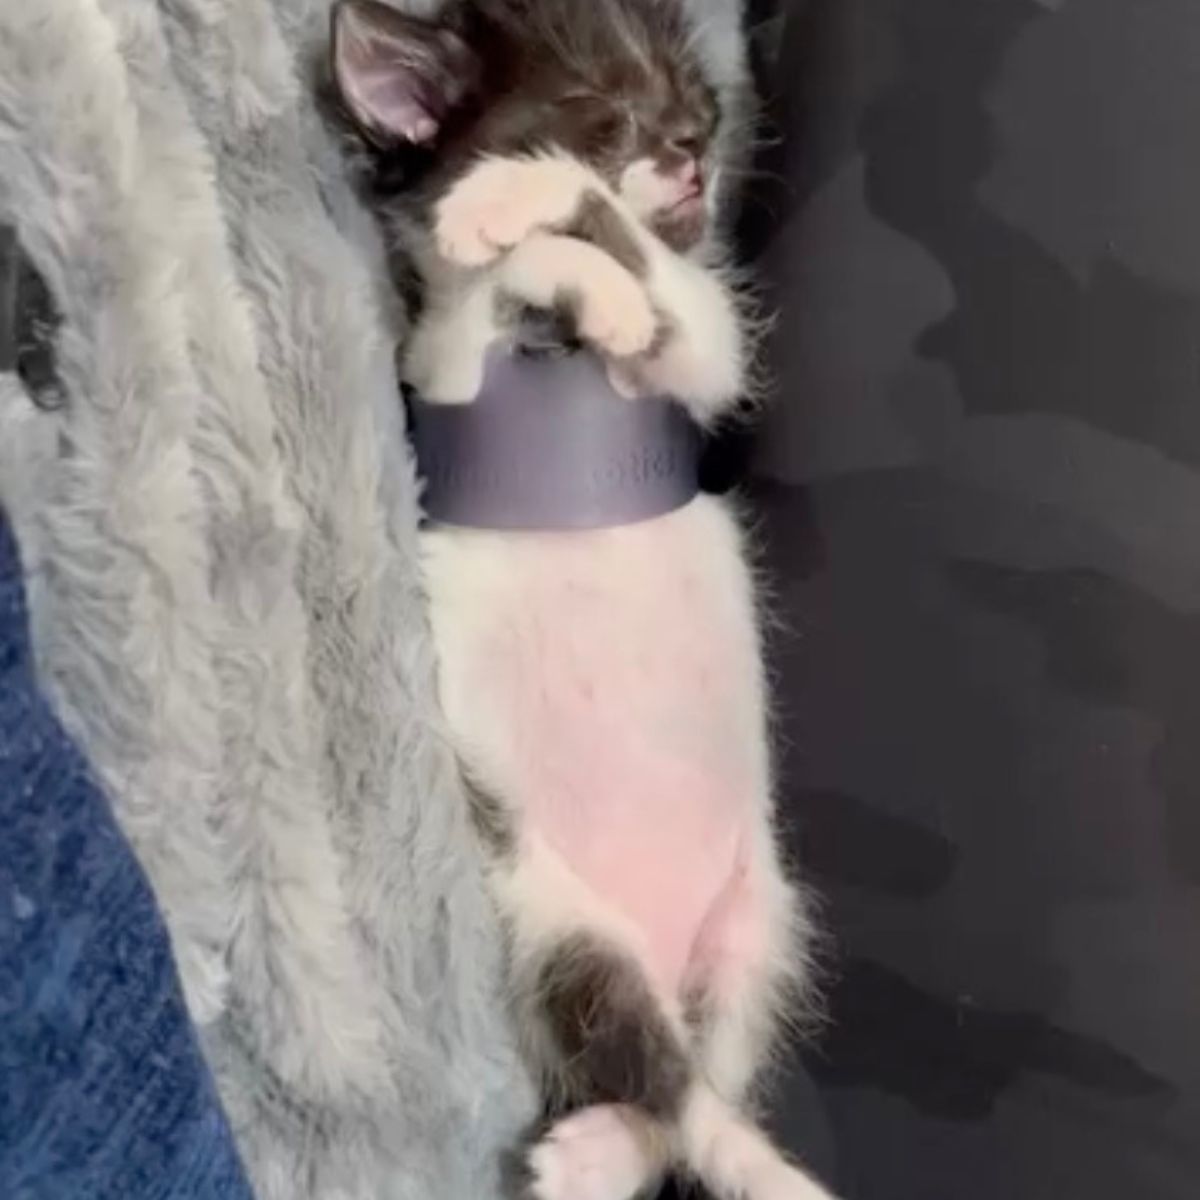 tiny kitten sleeping